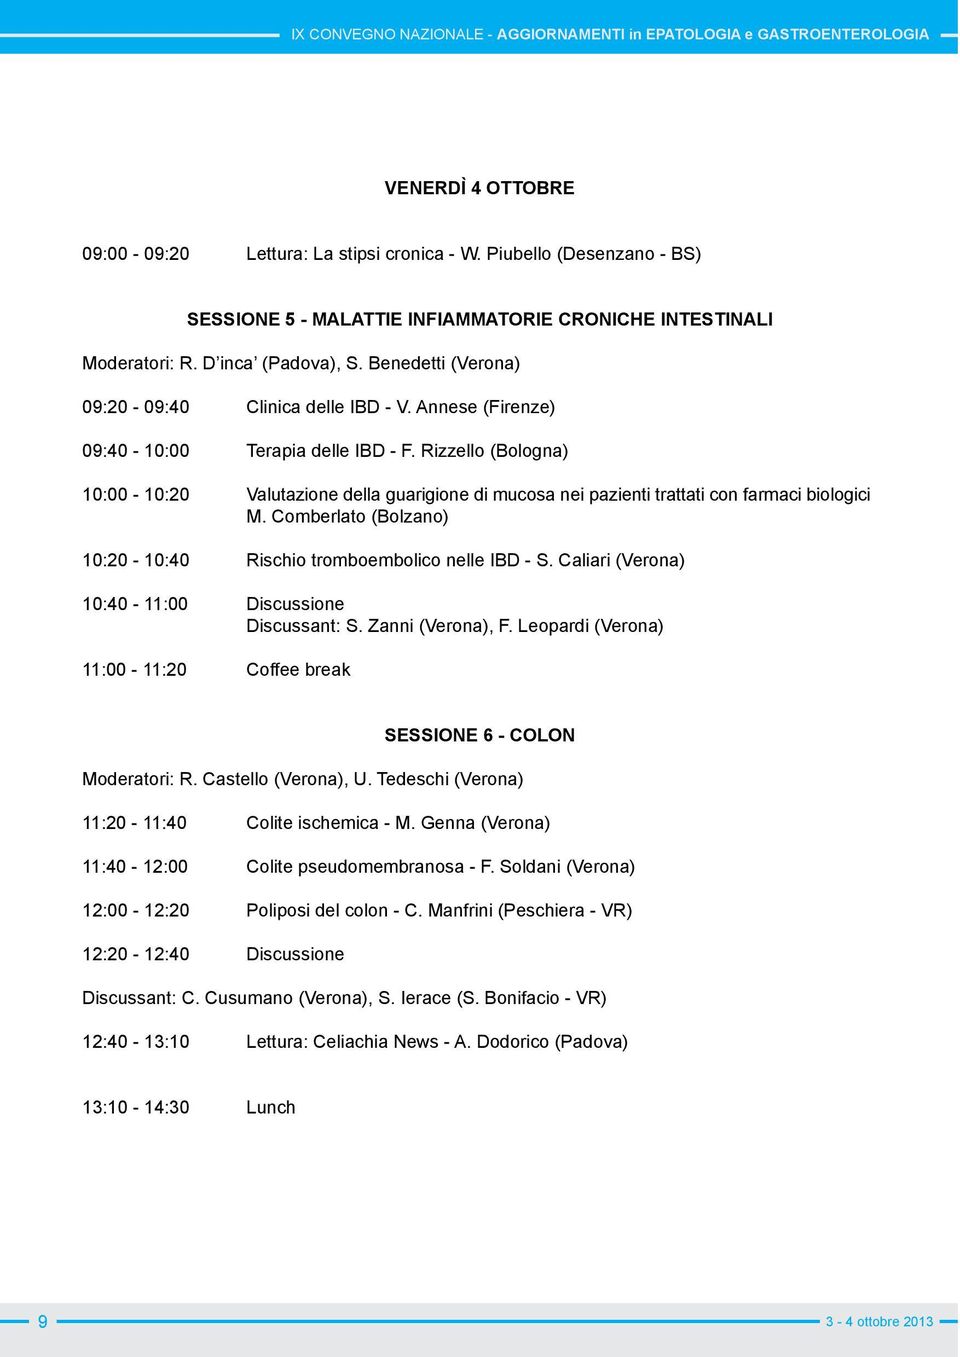 Rizzello (Bologna) 10:00-10:20 Valutazione della guarigione di mucosa nei pazienti trattati con farmaci biologici M. Comberlato (Bolzano) 10:20-10:40 Rischio tromboembolico nelle IBD - S.